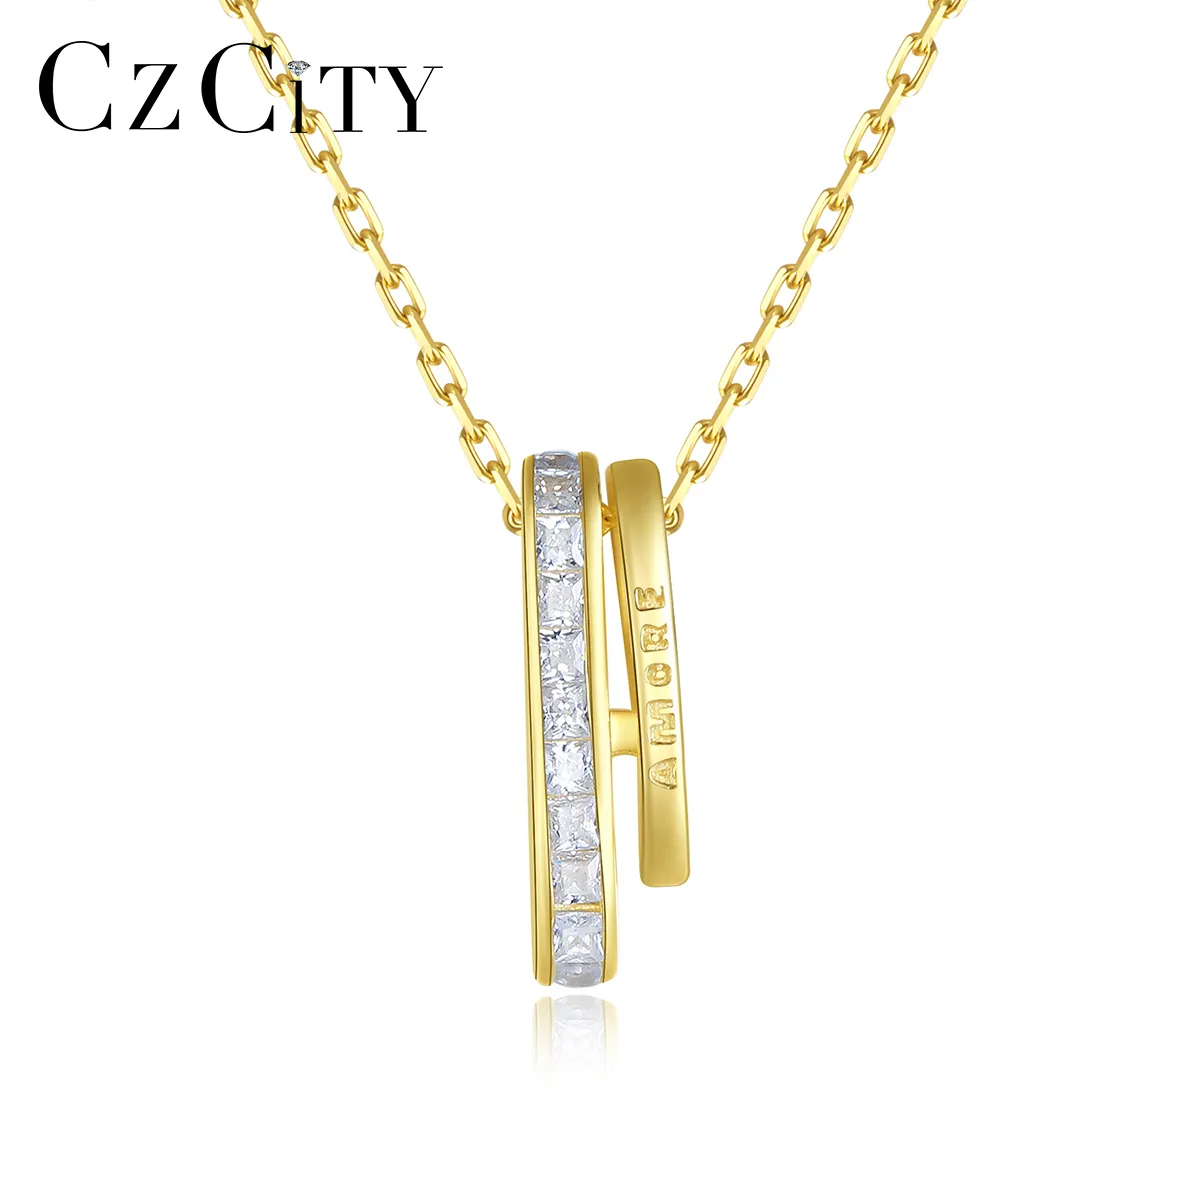 Czcity 925 colar de prata, joias da moda, feminino, pingente dourado